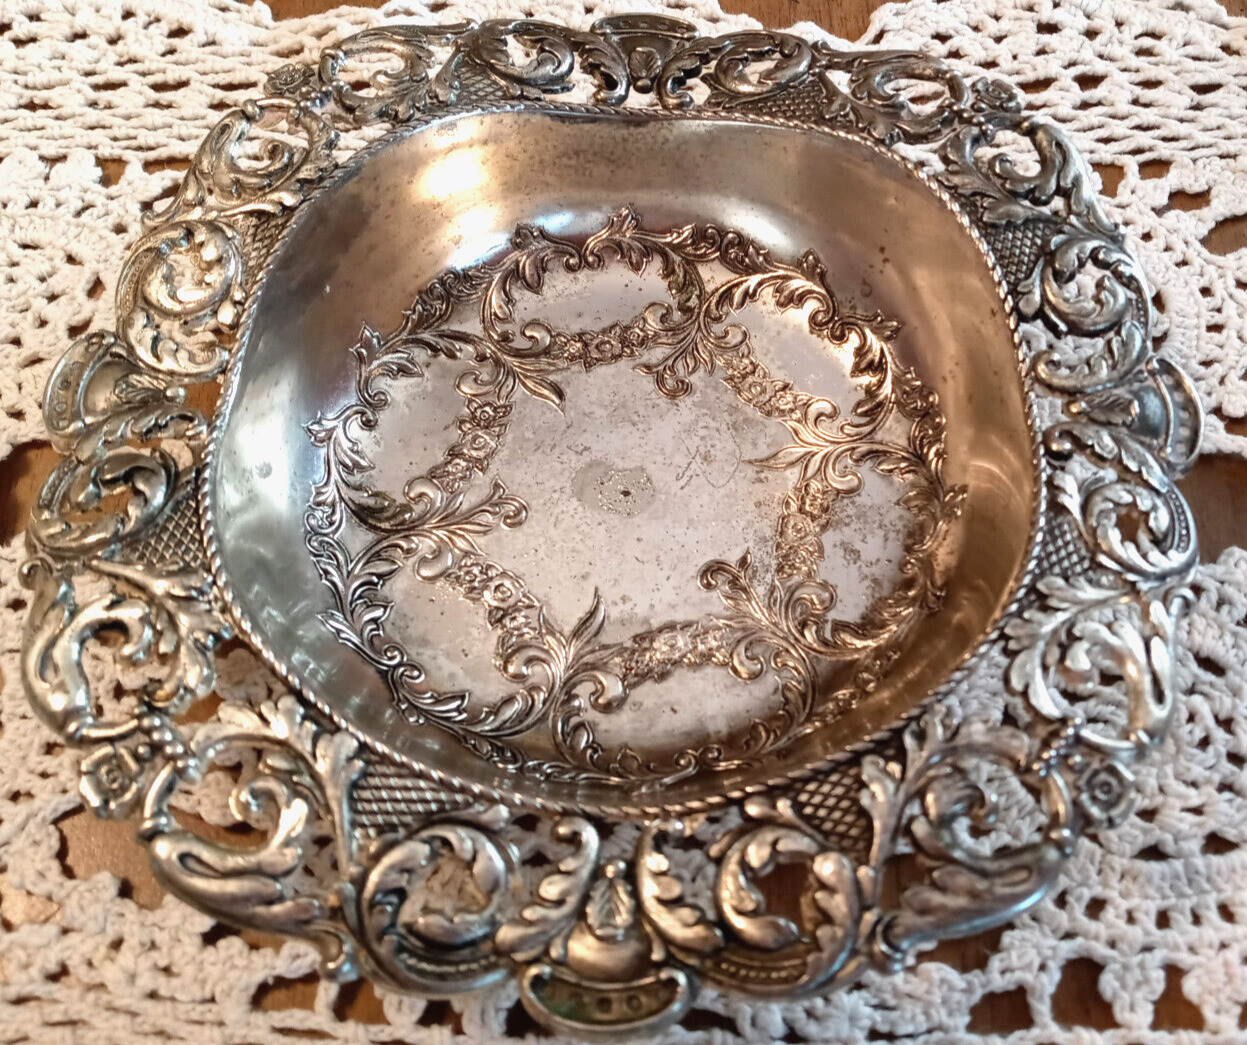 VTG Repousse Victorian Style Art Nouveau Cottagecore Vanity Trinket Dish Bowl